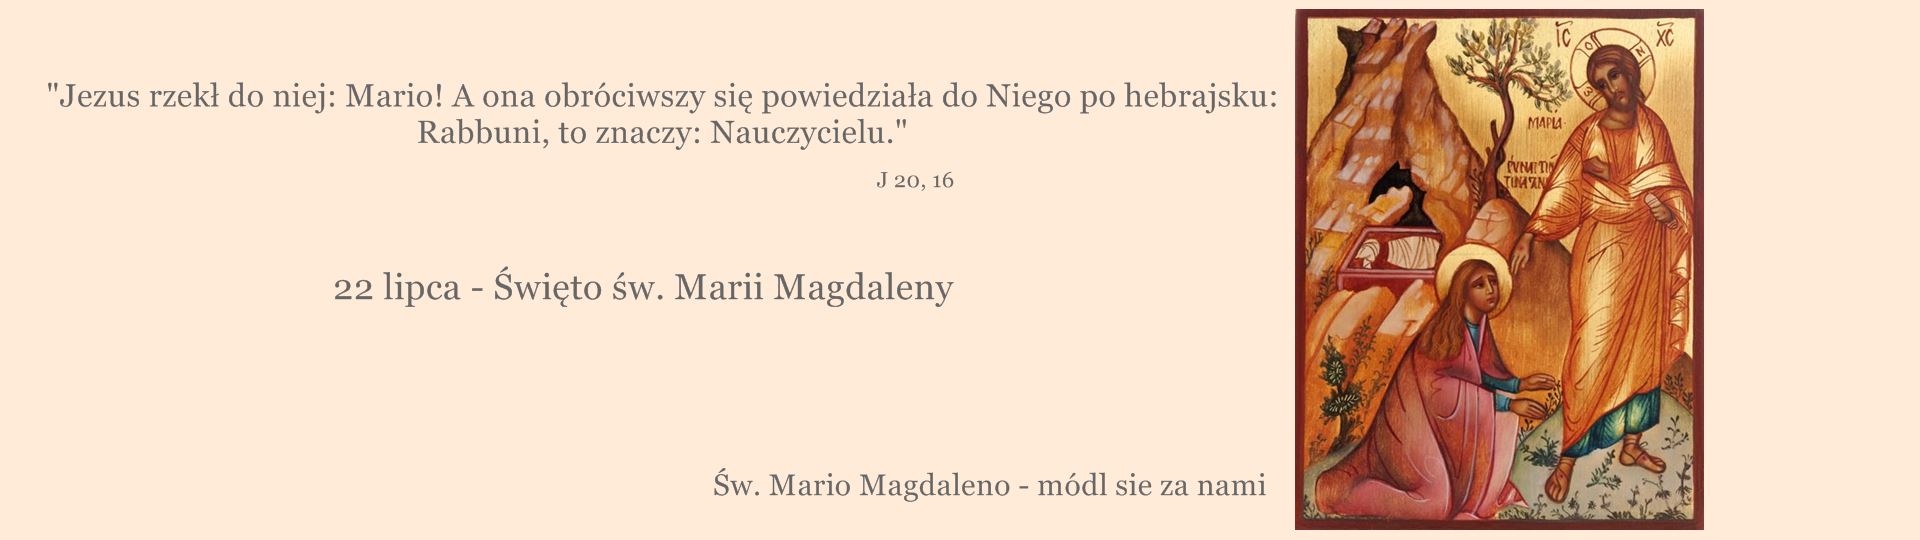 07.22 Maria Magdalena